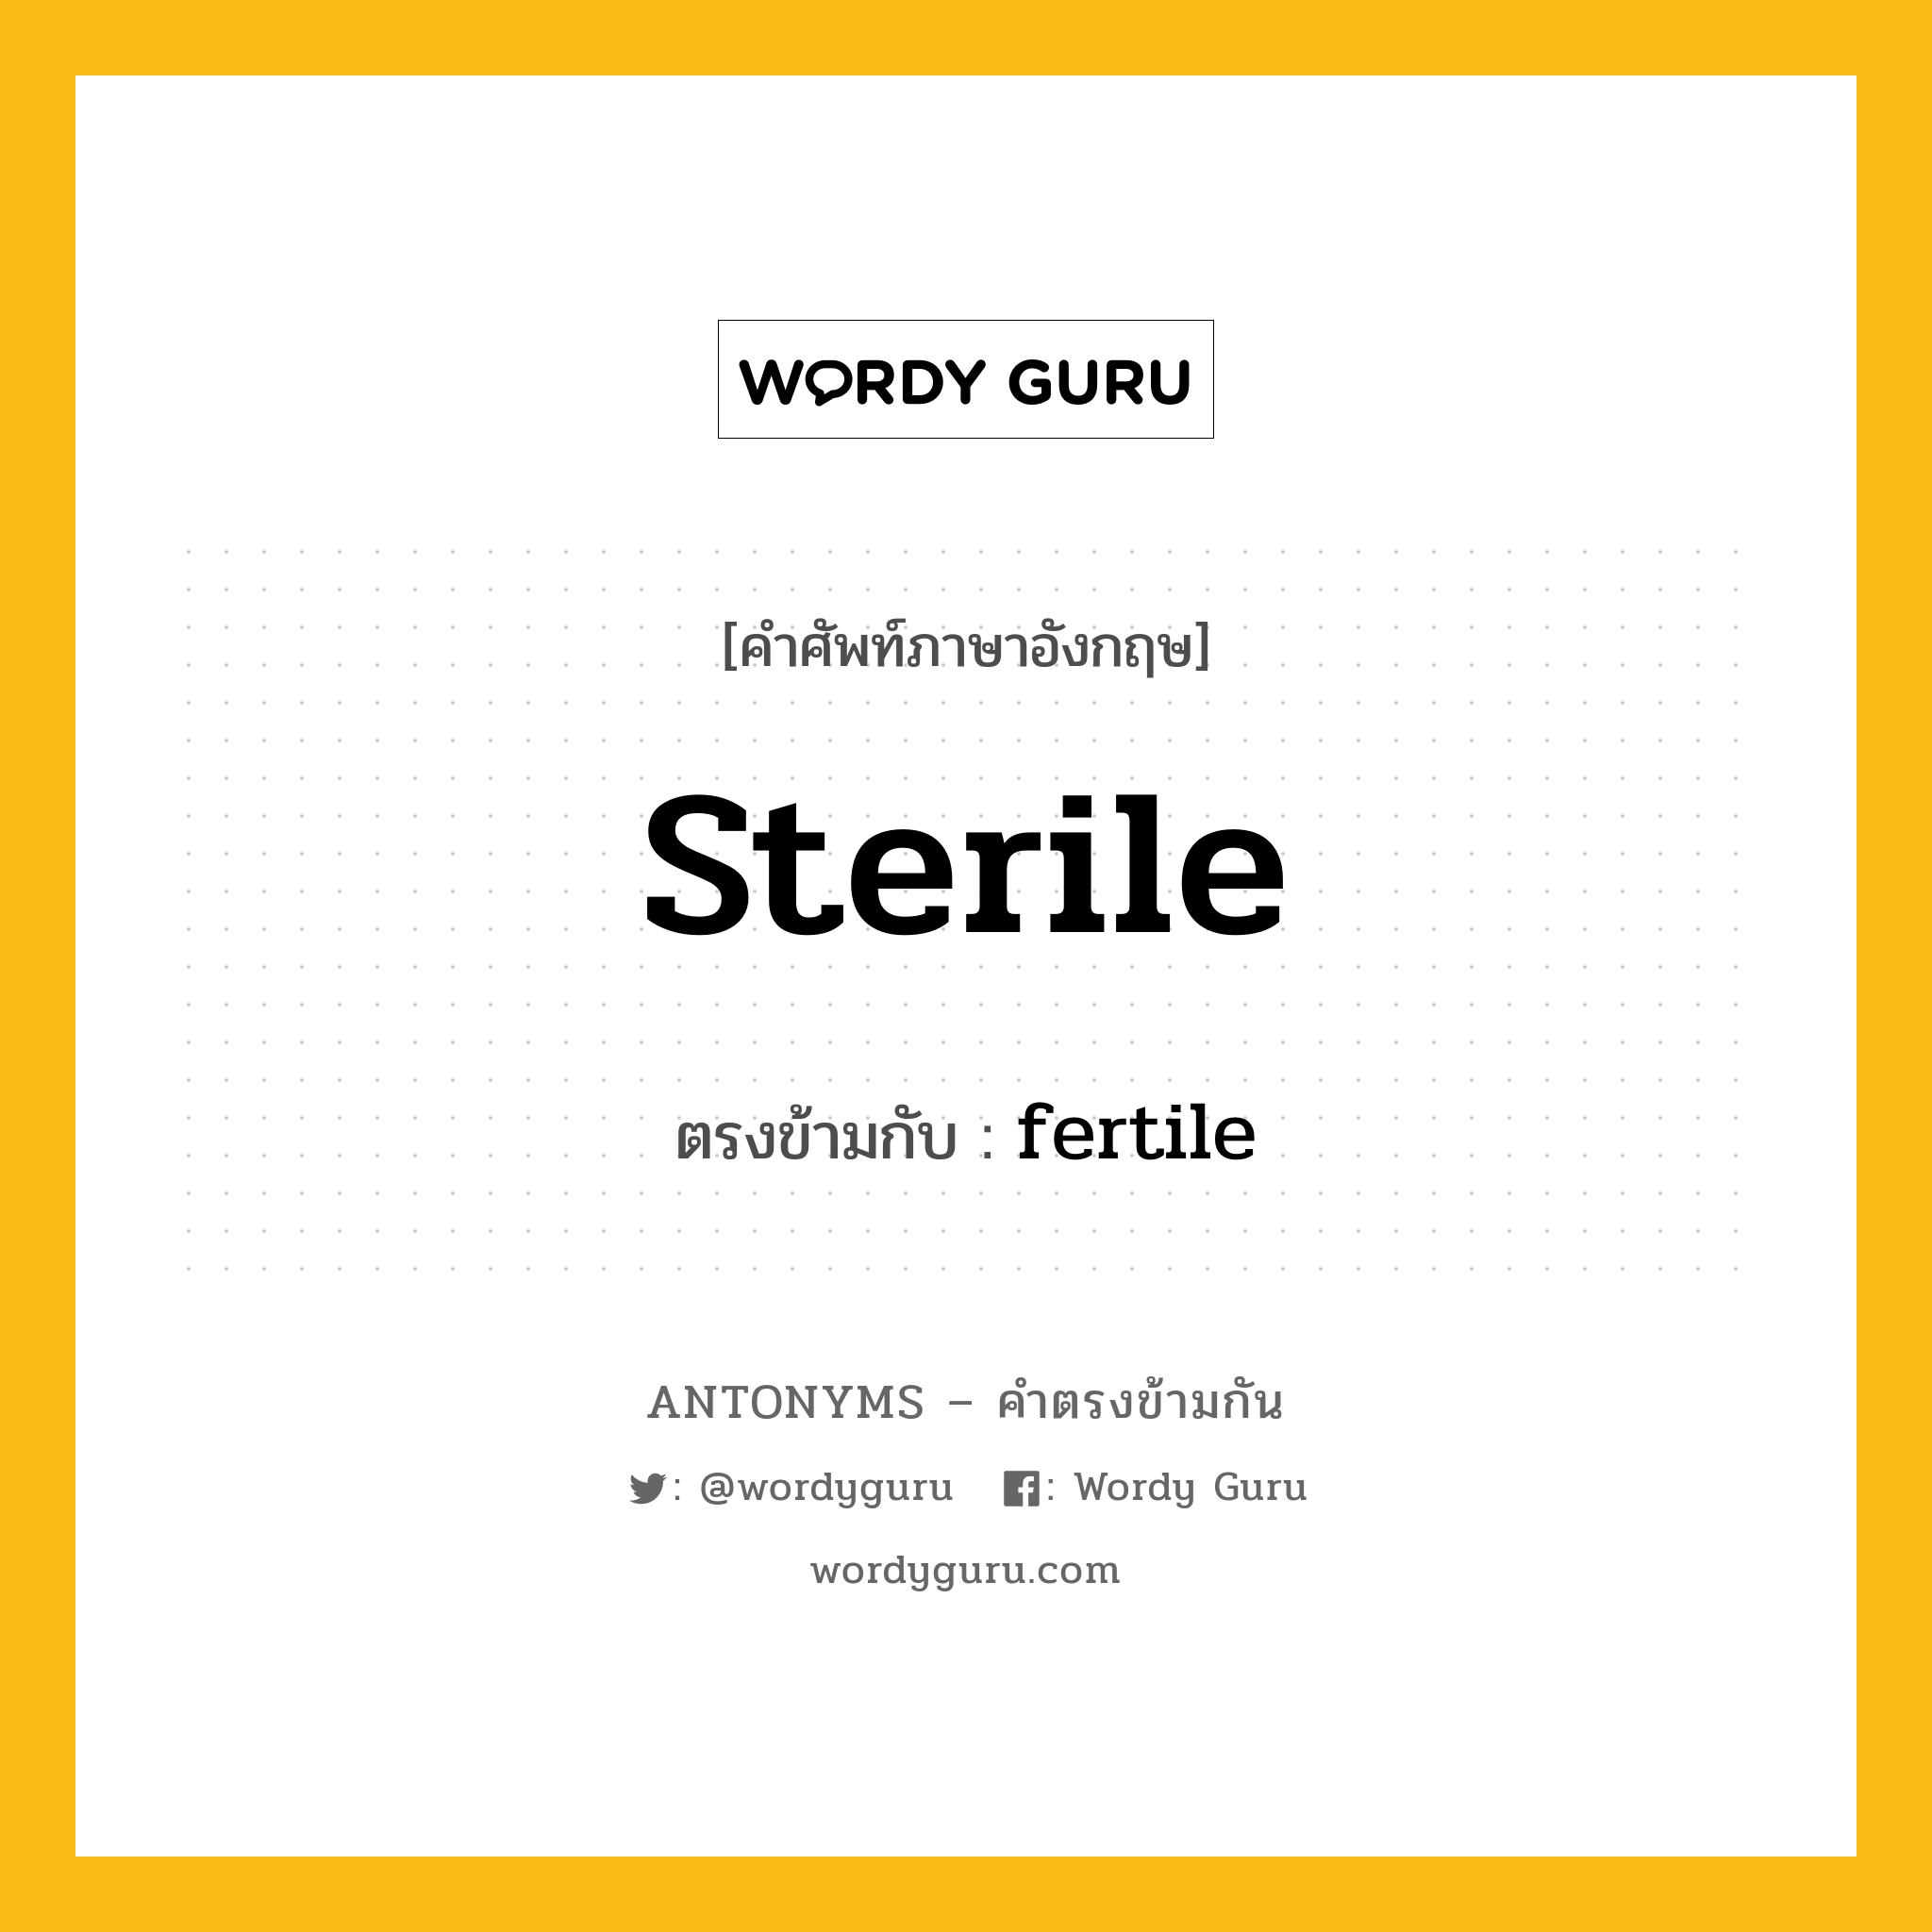 sterile เป็นคำตรงข้ามกับคำไหนบ้าง?, คำศัพท์ภาษาอังกฤษ sterile ตรงข้ามกับ fertile หมวด fertile